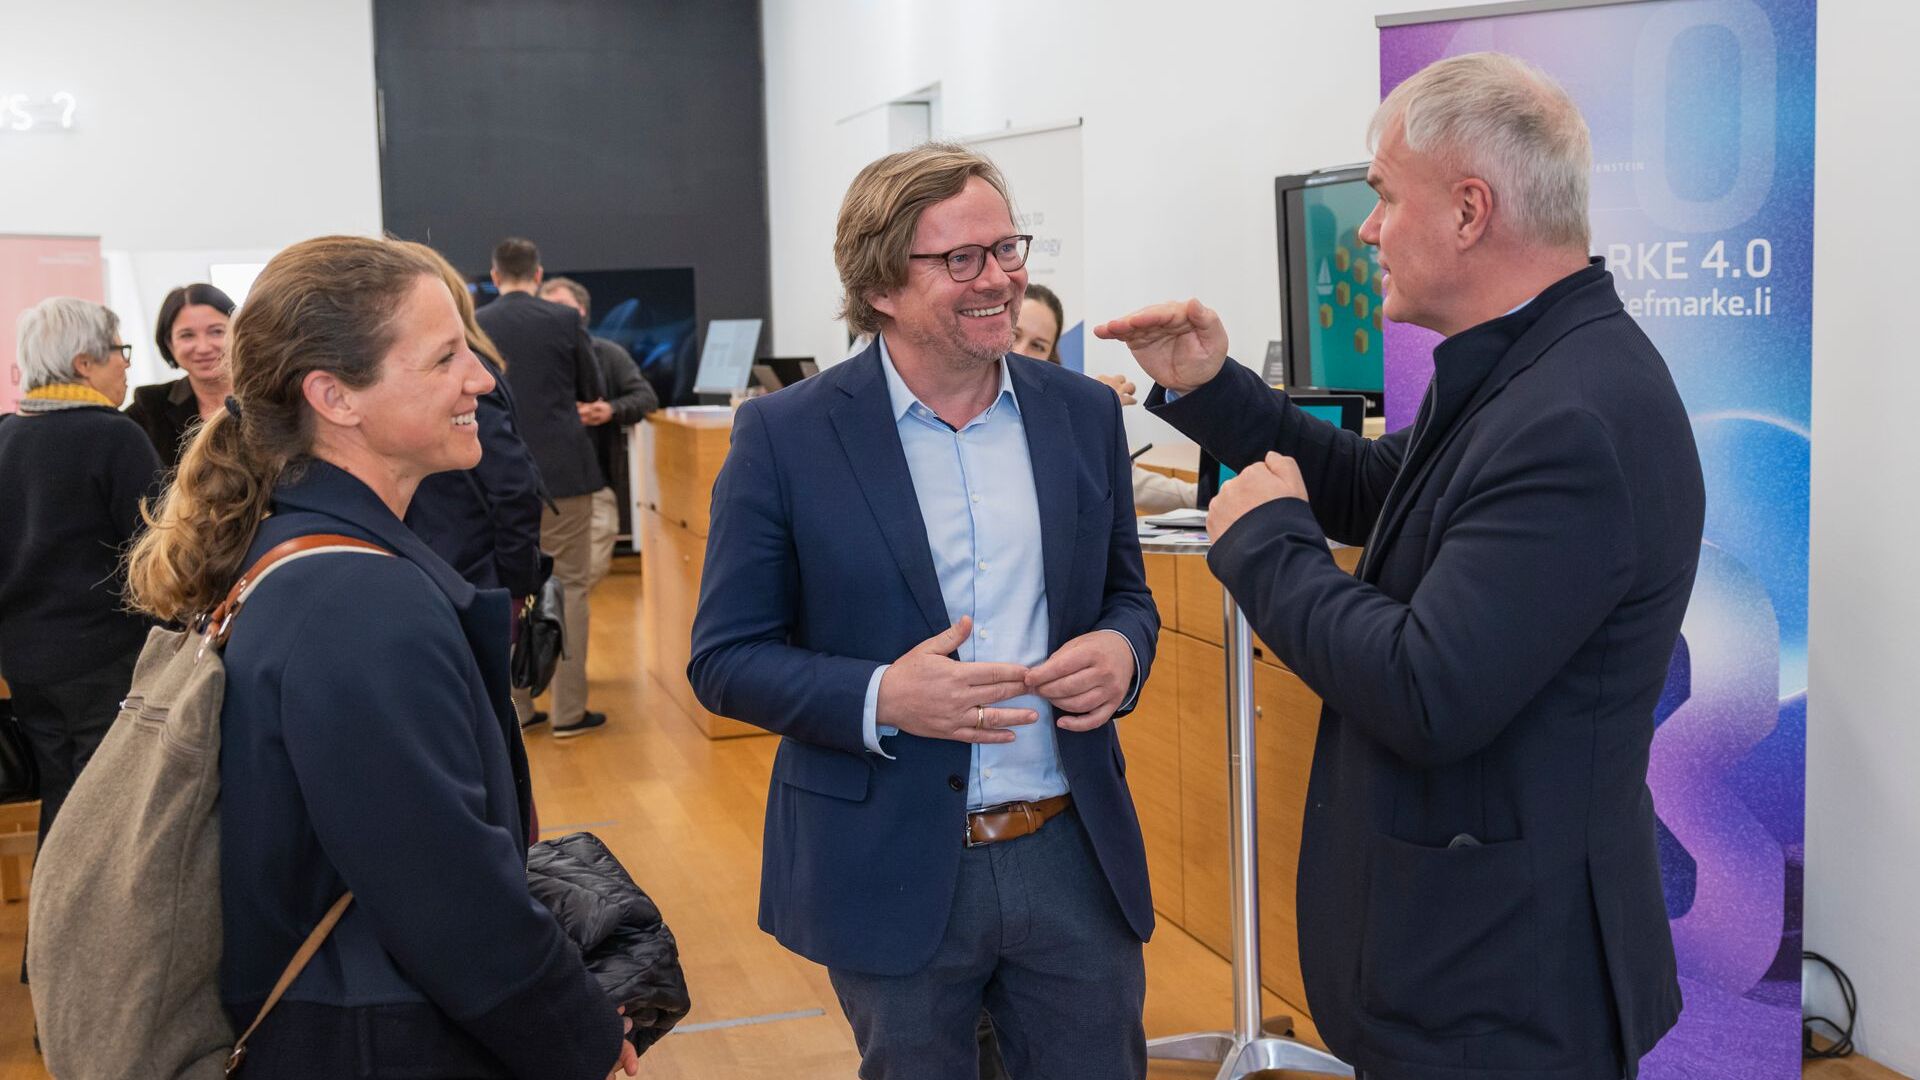 Le "Digitaltag Vaduz", accueilli par le Kunstmuseum de la capitale de la Principauté de Liechtenstein le samedi 6 novembre 2021, a suscité l'enthousiasme du public et des intervenants en analogie avec le "Swiss Digital Day" du lendemain 10 : la présentation de le cryptotimbre de Philatelie Liechtenstein